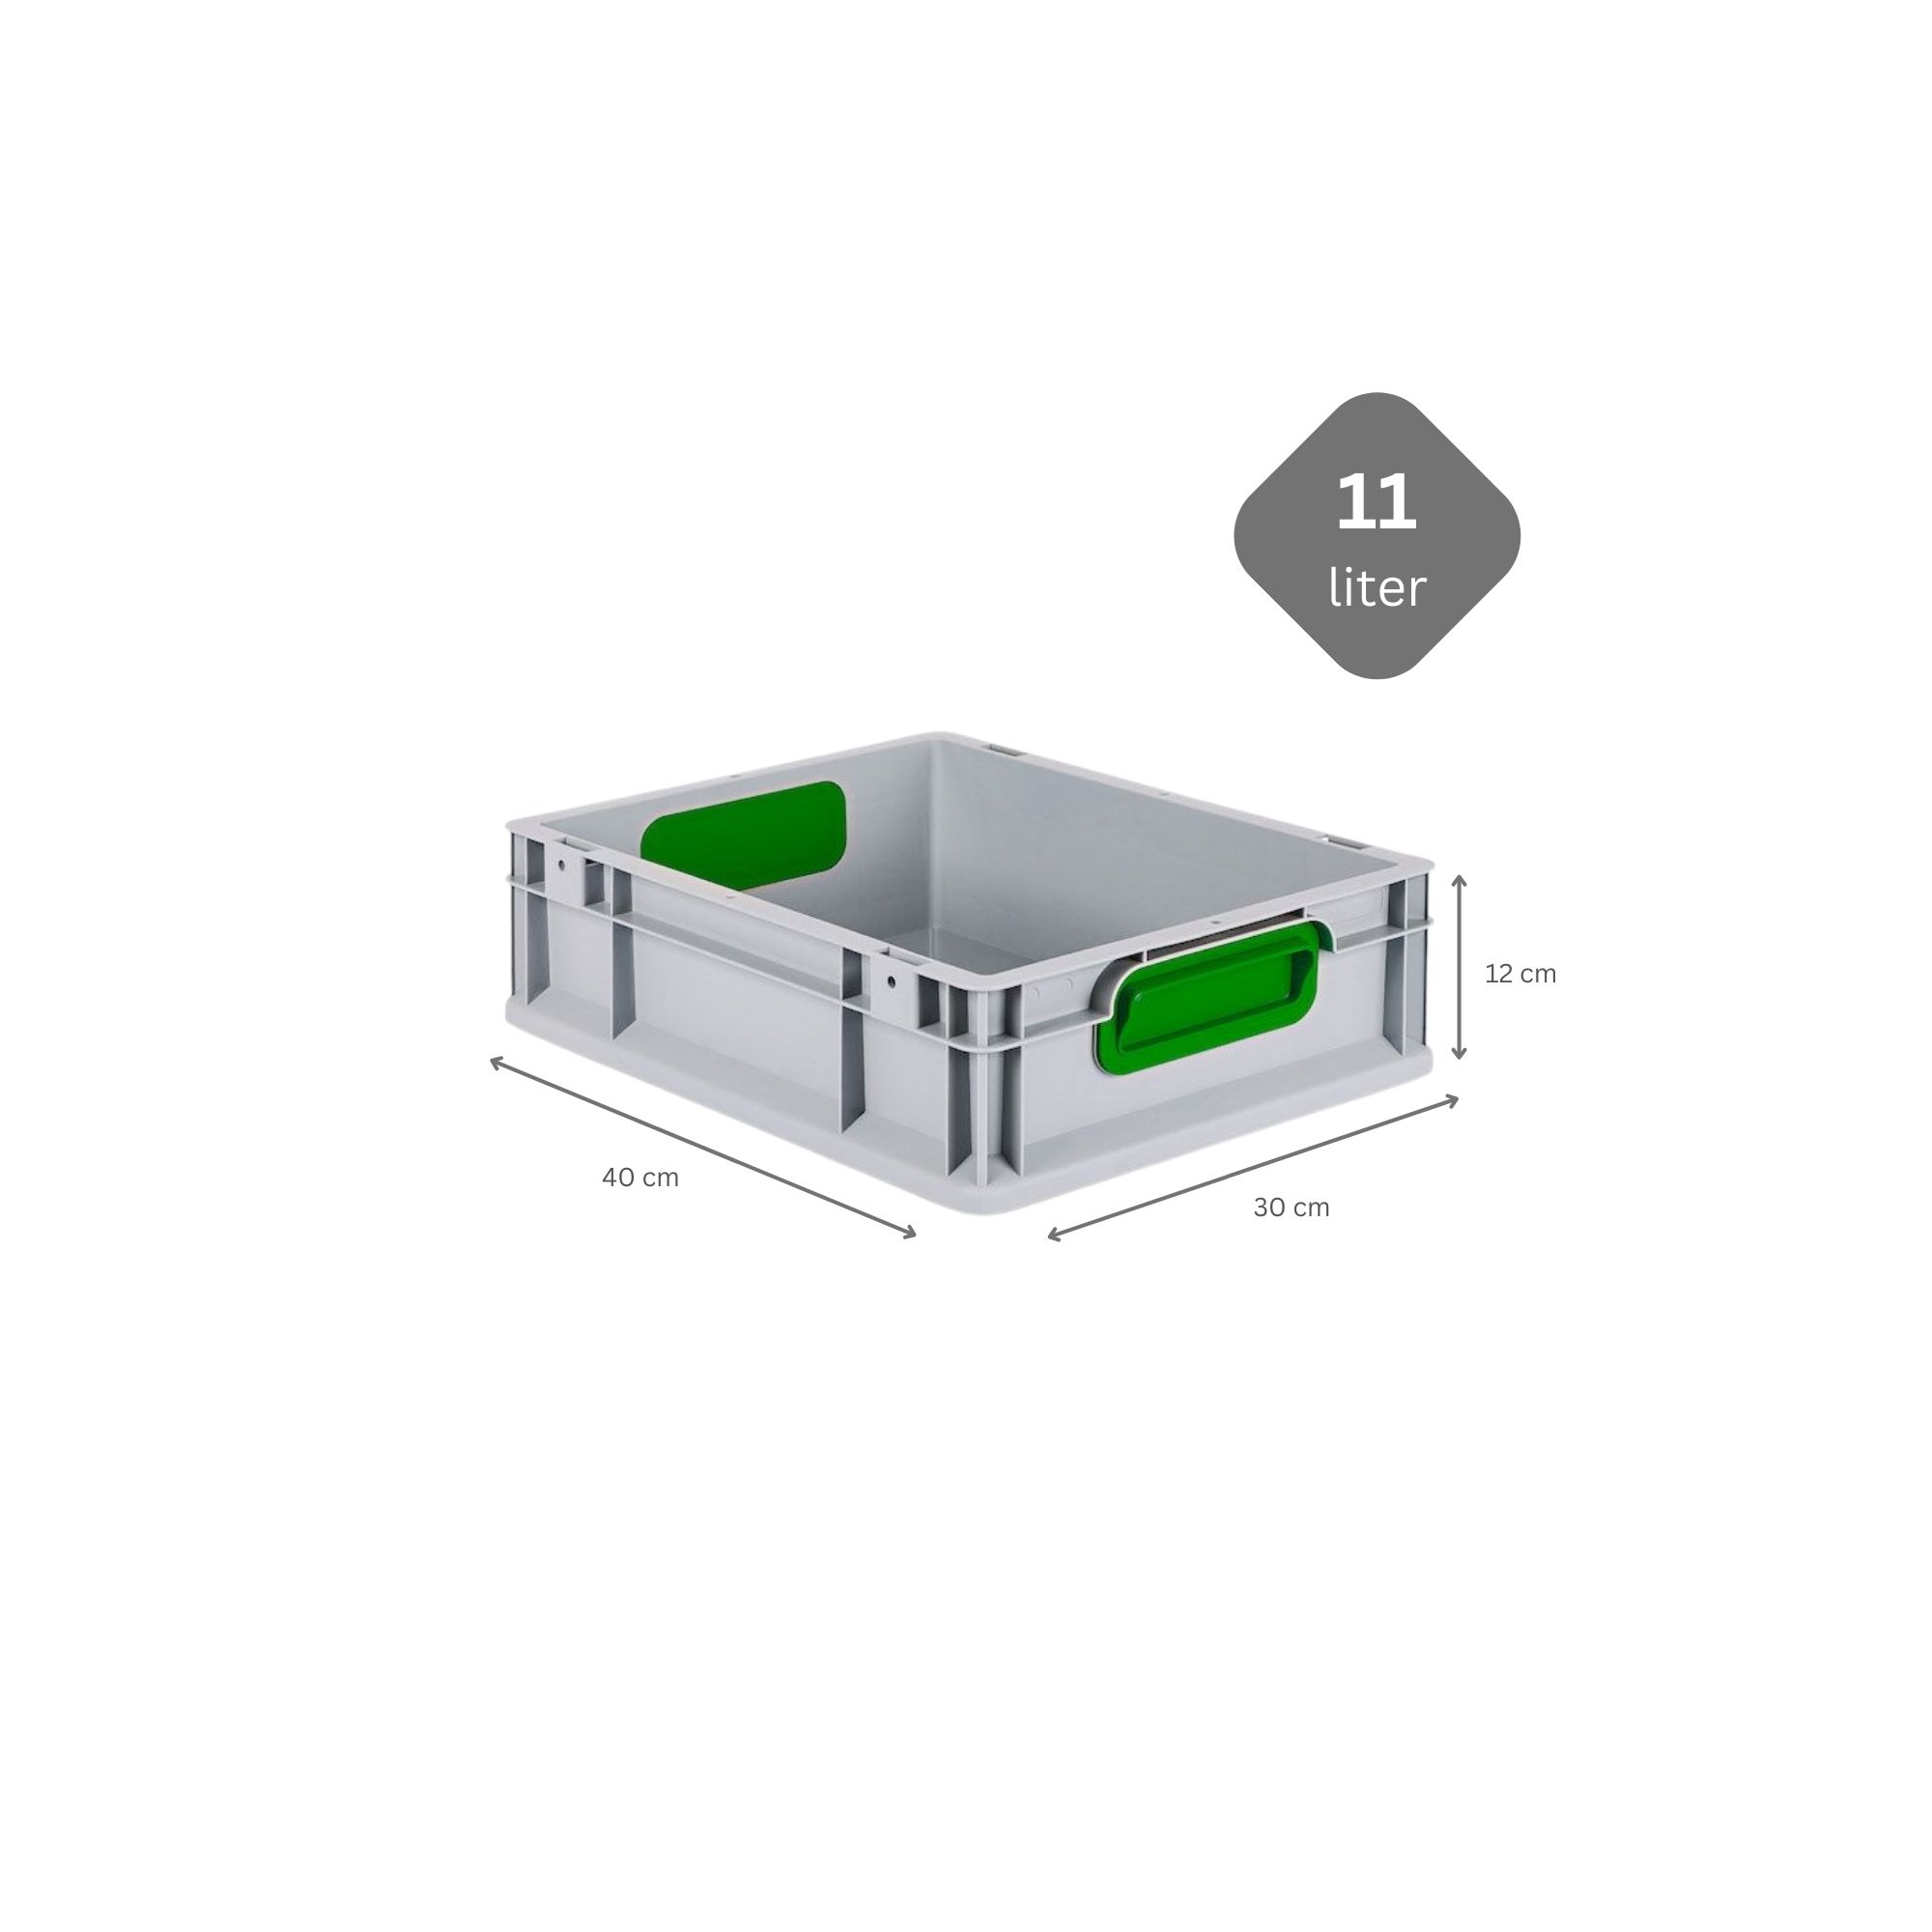 SparSet 5x Eurobox NextGen Color mit Auflagedeckel und Schiebeschnappverschlüsse | HxBxT 12x30x40cm | 11 Liter | Griffe grün geschlossen | Glatter Boden | Eurobehälter, Transportbox, Transportbehälter, Stapelbehälter